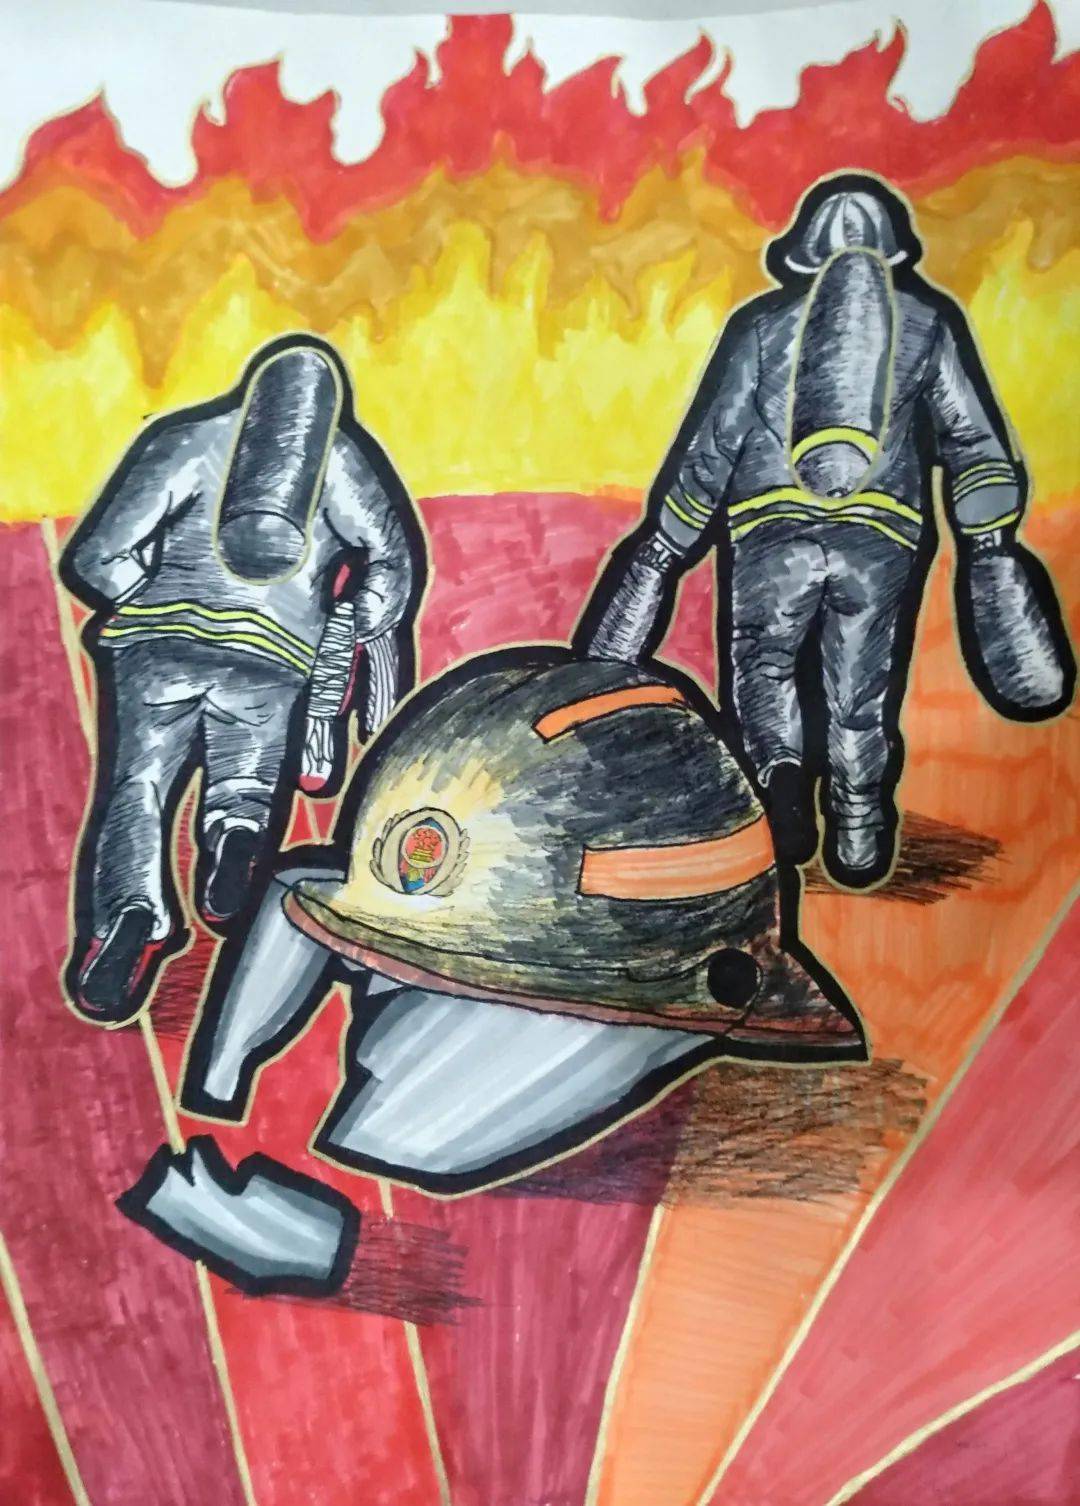 精彩的创意  孩子们用一幅幅生动的画作 描绘出心目中的"消防安全"